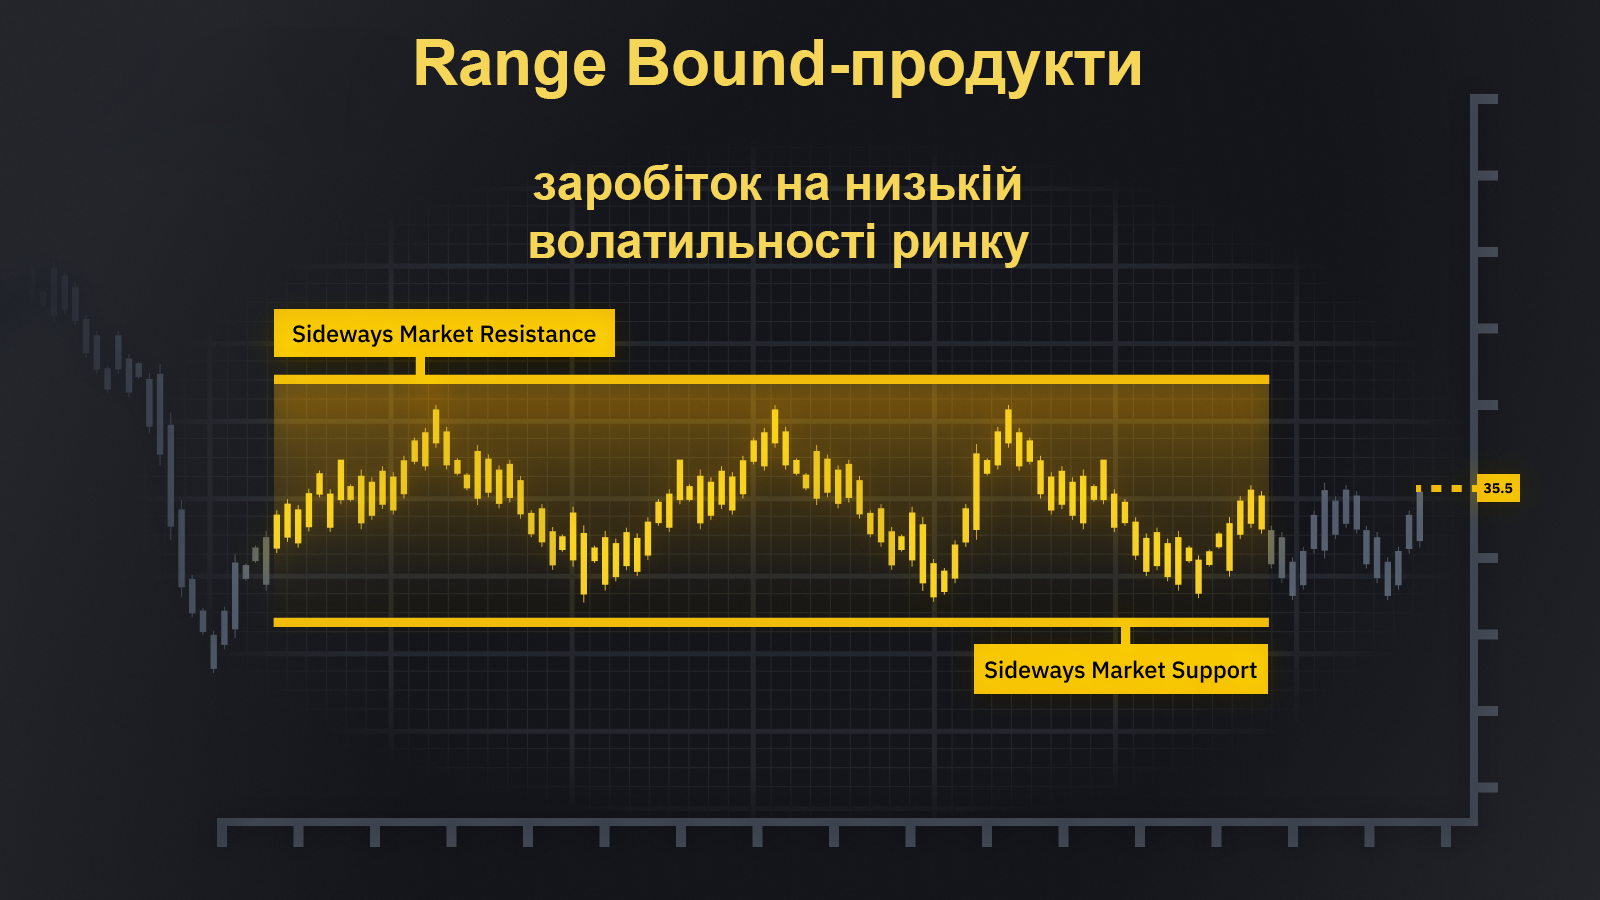 📈 Range Bound-продукти: як заробити 200% річних, якщо біткоїн в флеті